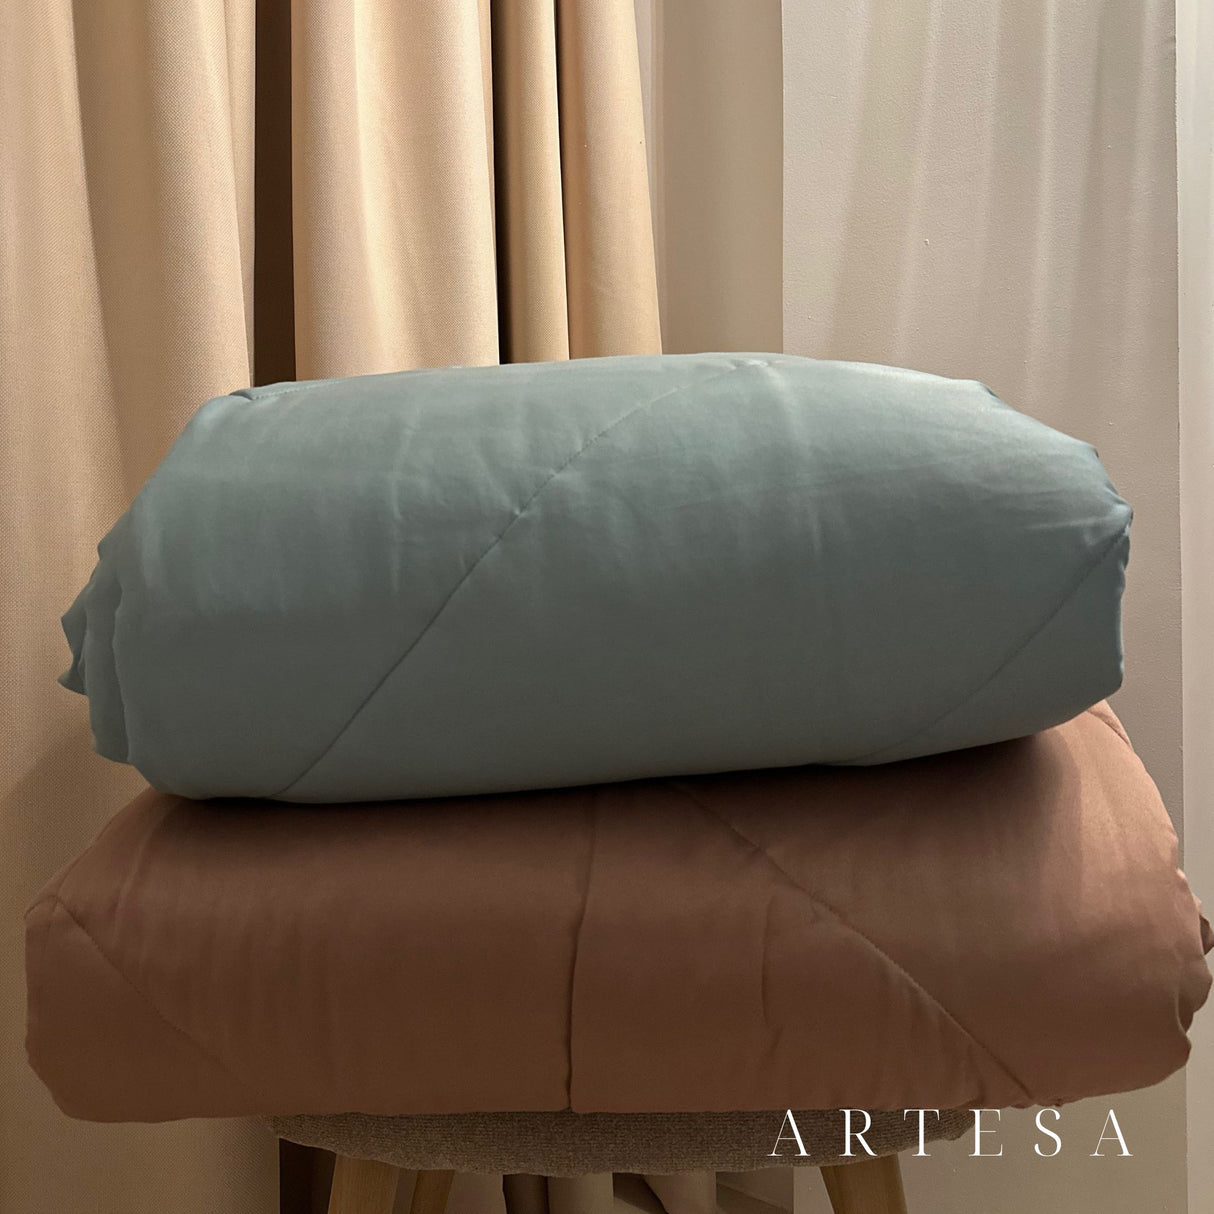 Artesa Luxe 100% Prime Canadian Cotton Quilted Duvet Bedding Set - Premium 4-Piece Comfort Ensemble